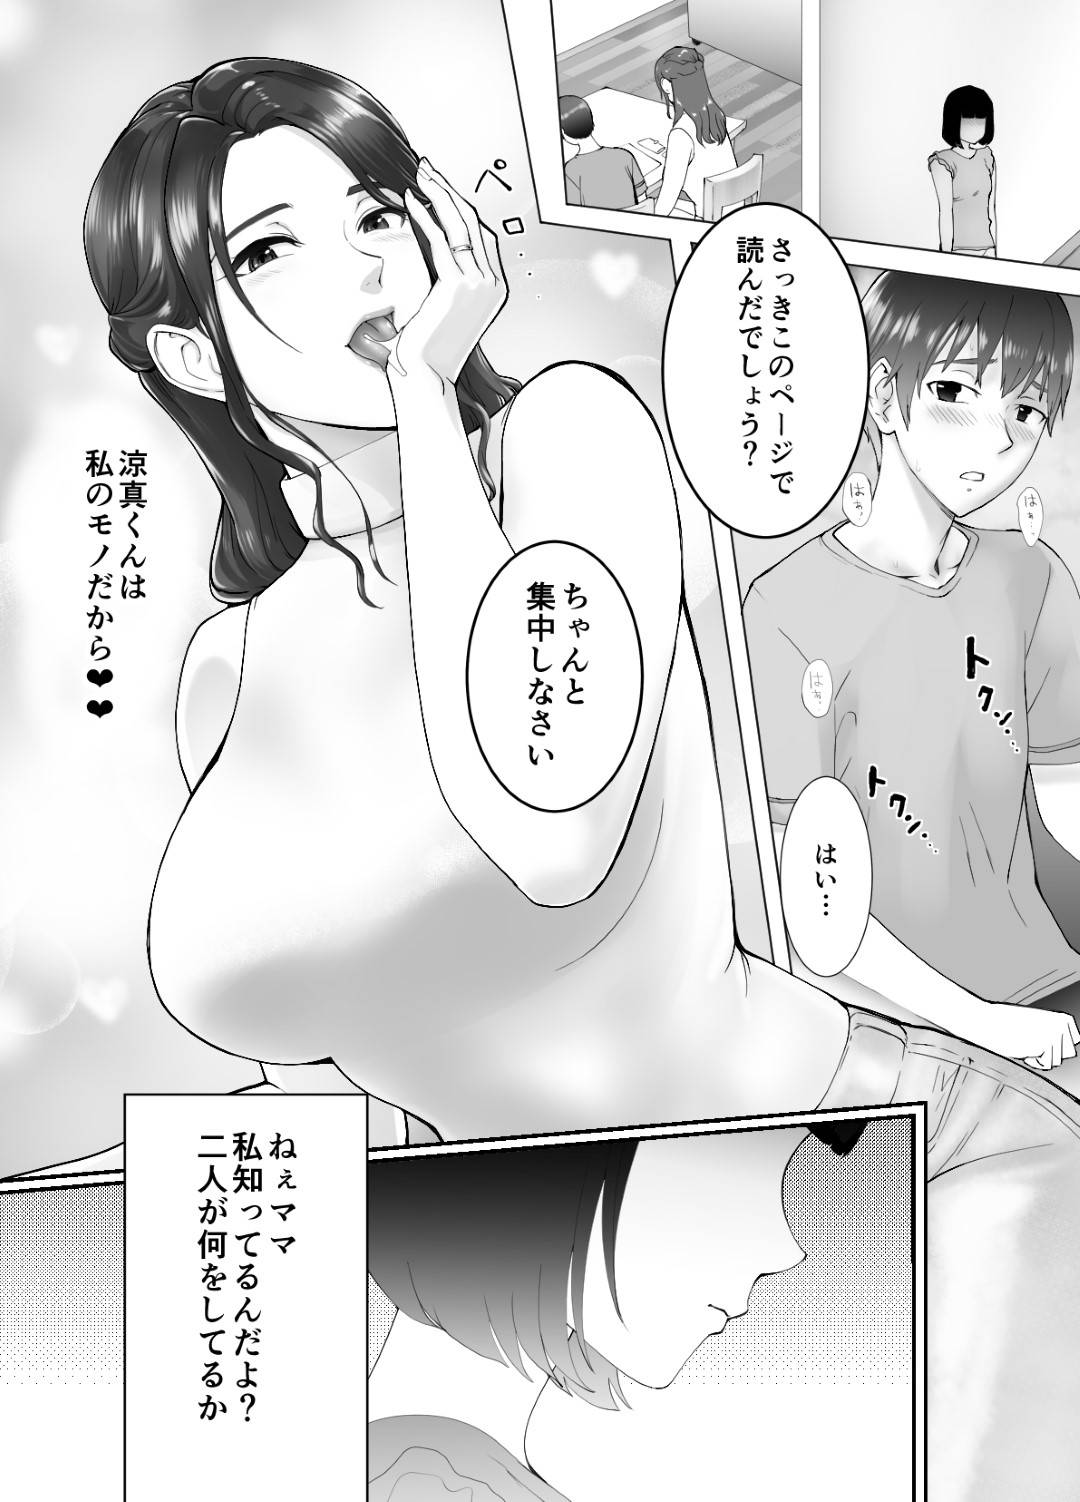 【エロ漫画】愛菜ママと涼真は、お風呂を楽しんだり勉強を教えると名目でエッチなことをしまくる【ピンク☆太郎】